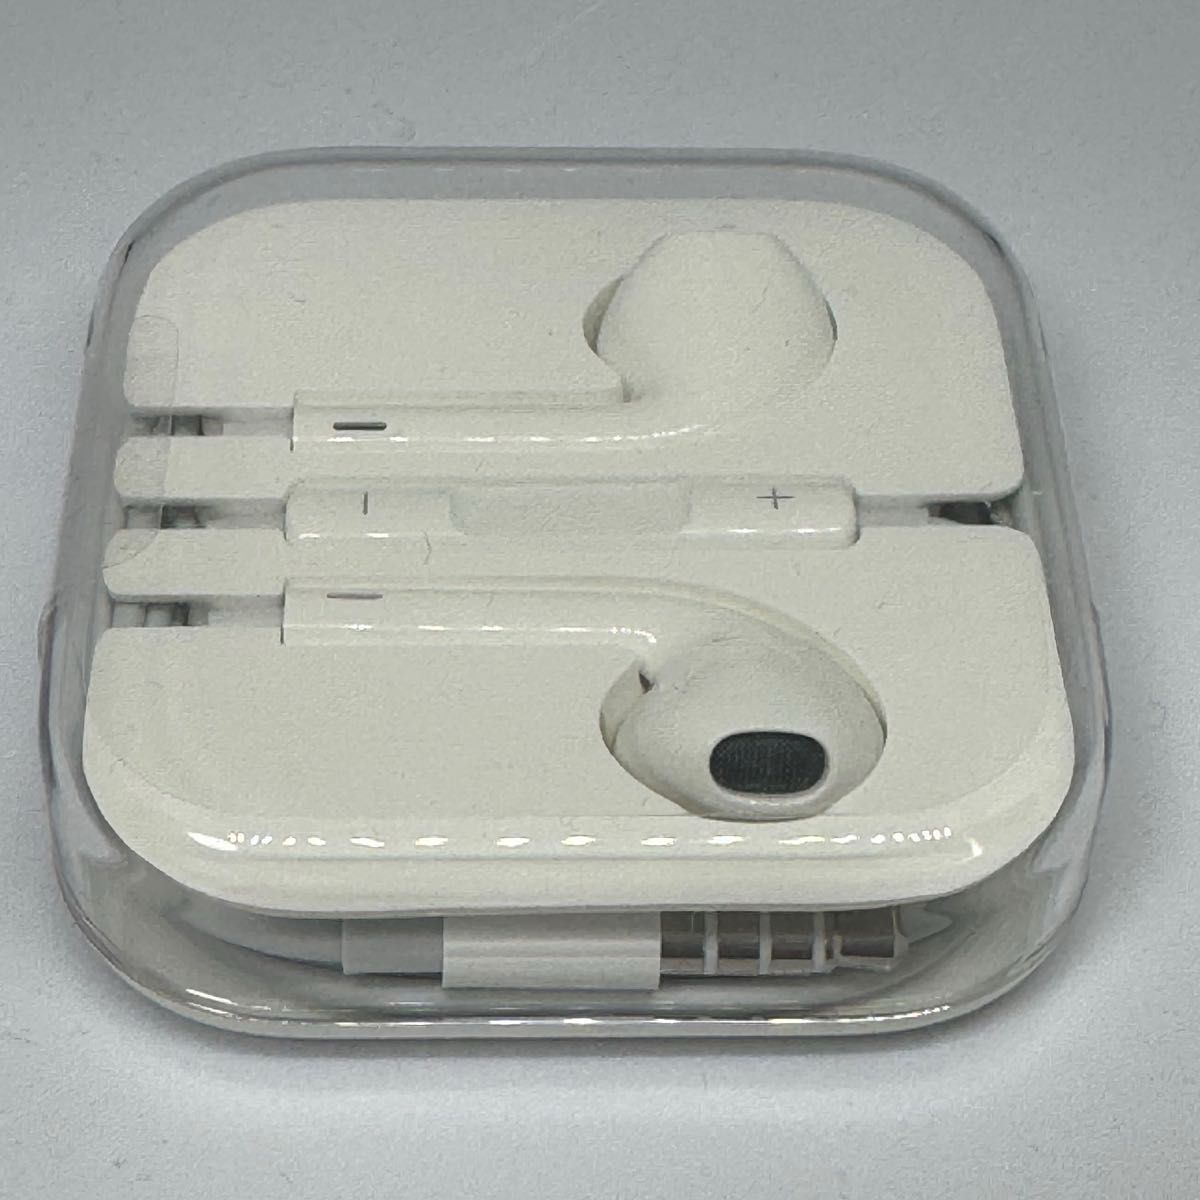 【初期化済】【おまけ付き】Apple iPod shuffle 第4世代 A1373 MKM92J/A 2GB ゴールド